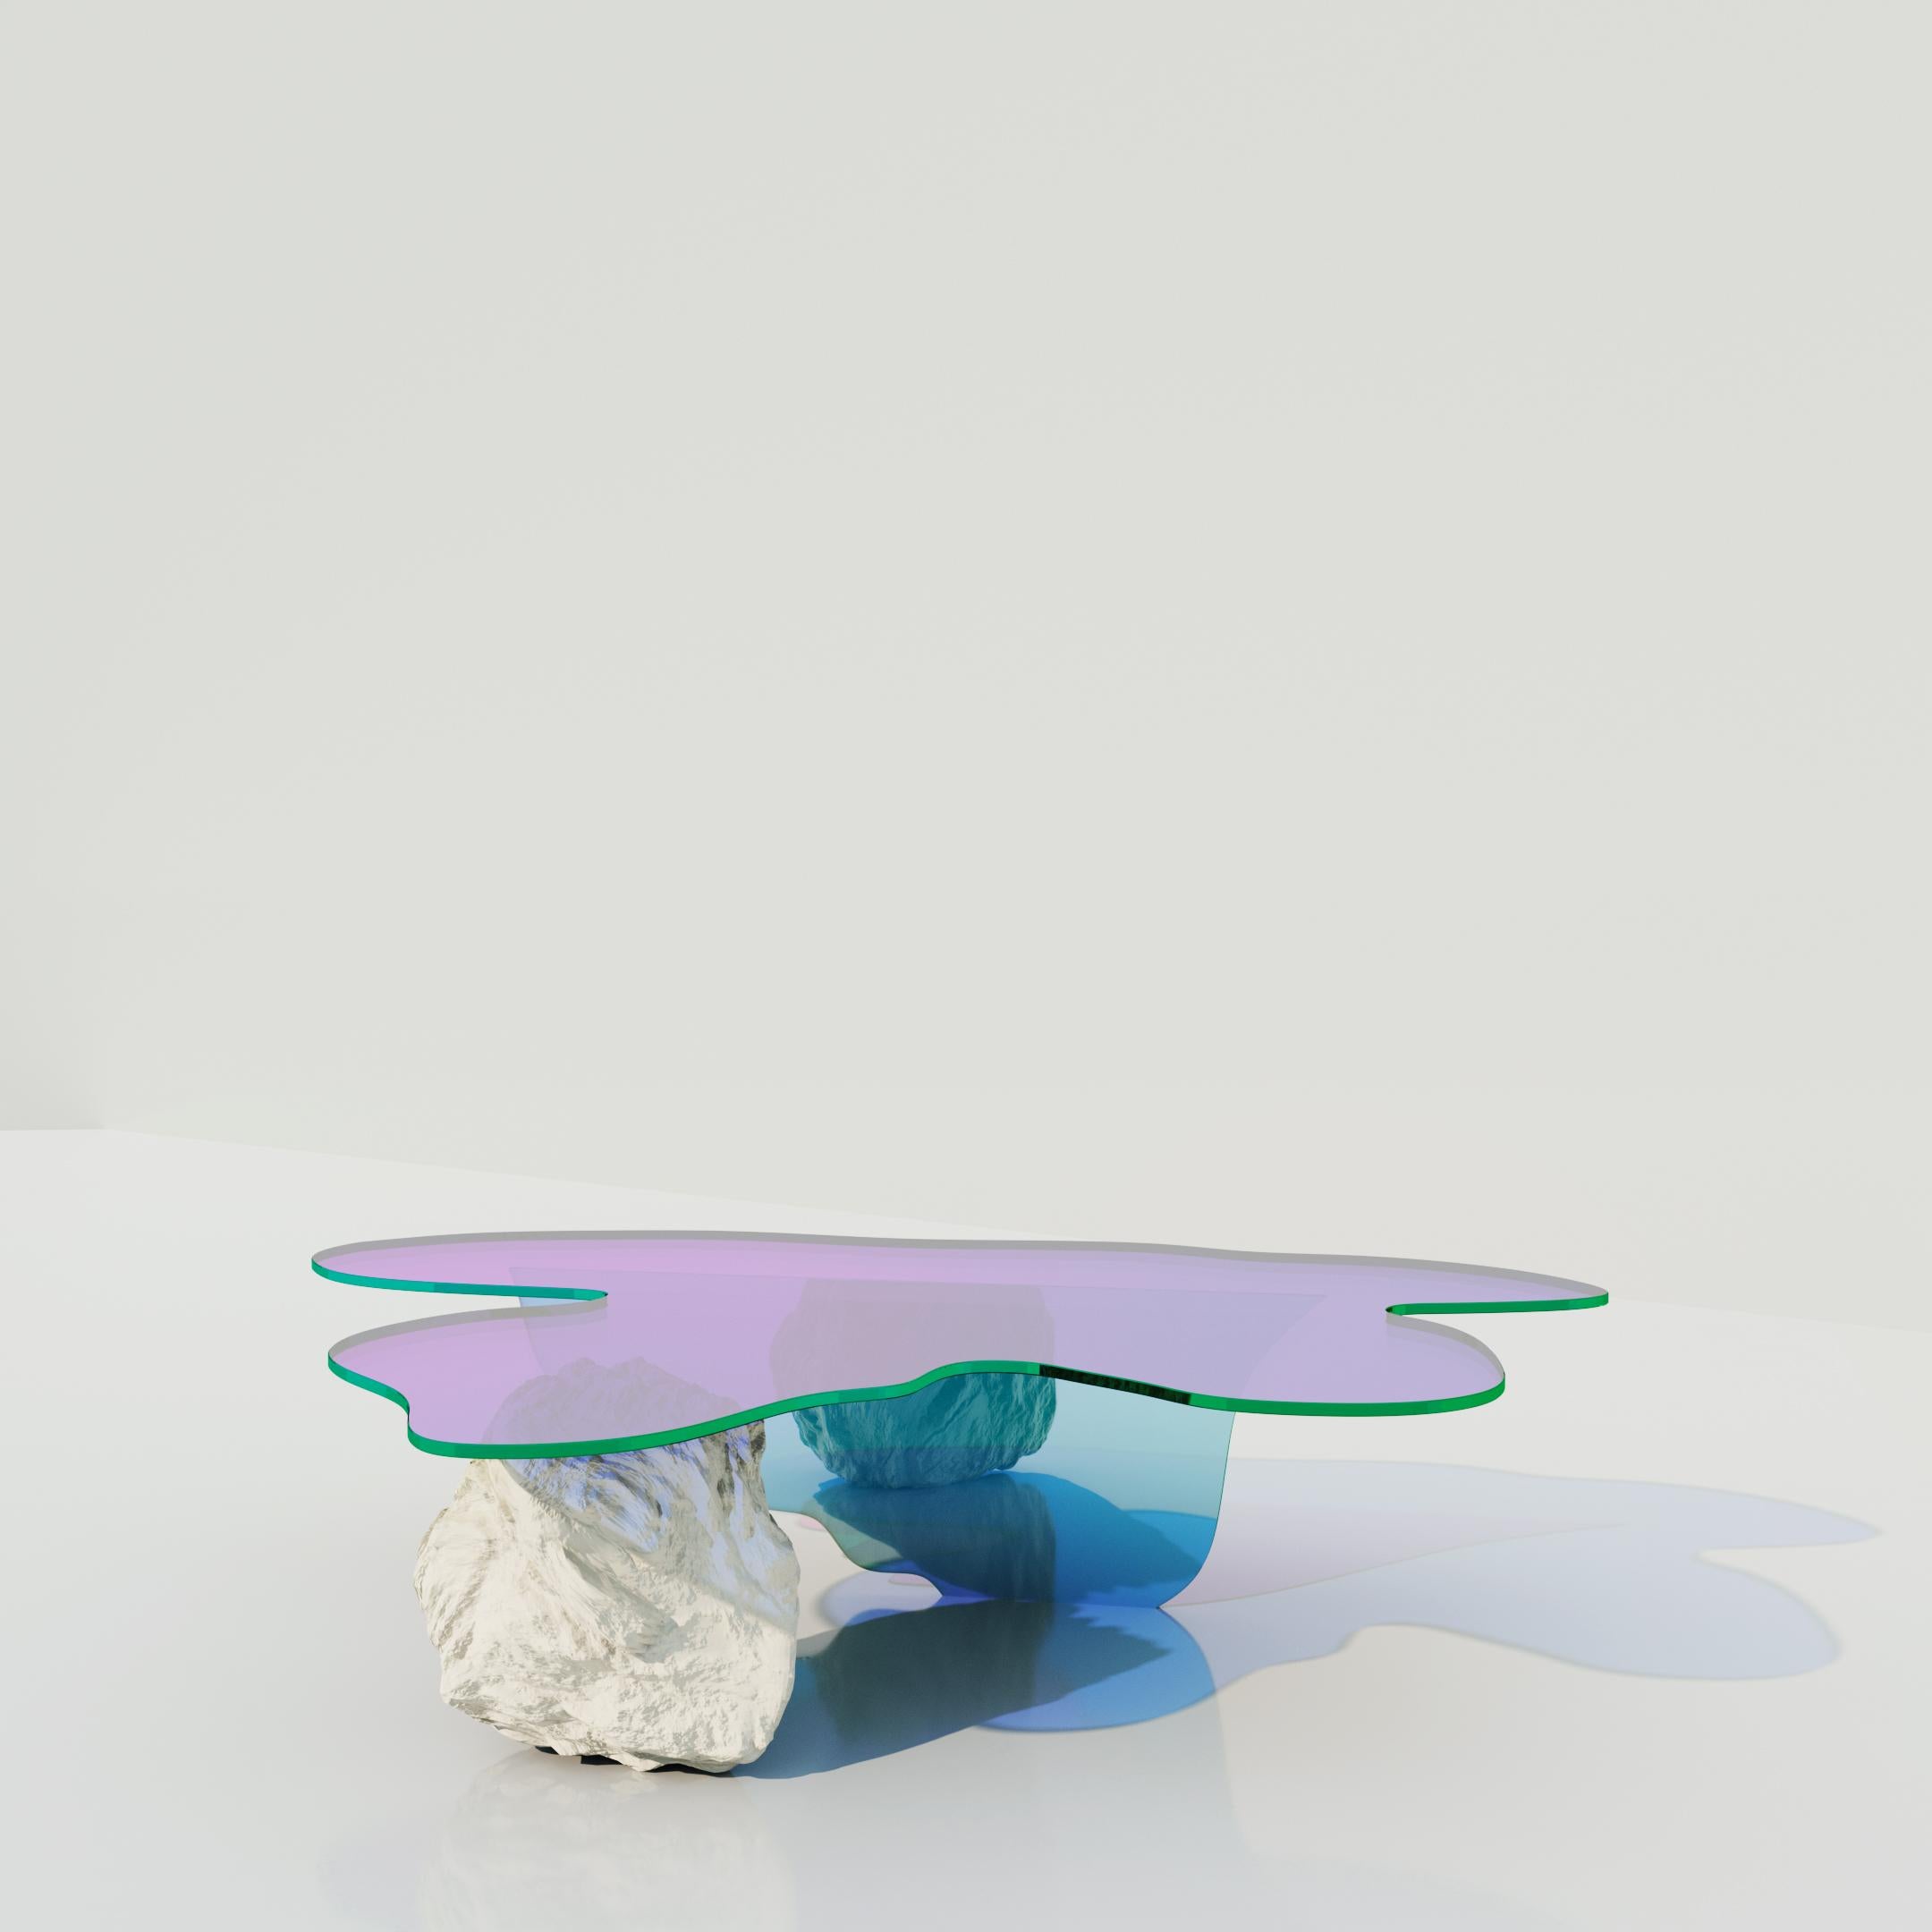 Table basse Isola de Brajak Vitberg
Dimensions : 30 x 100 x 120 cm
Matériaux : Verre dichroïque, pierre naturelle

La table est fabriquée en verre avec une finition satinée et un insert dichroïque.
Les couleurs de ce type de finition satinée